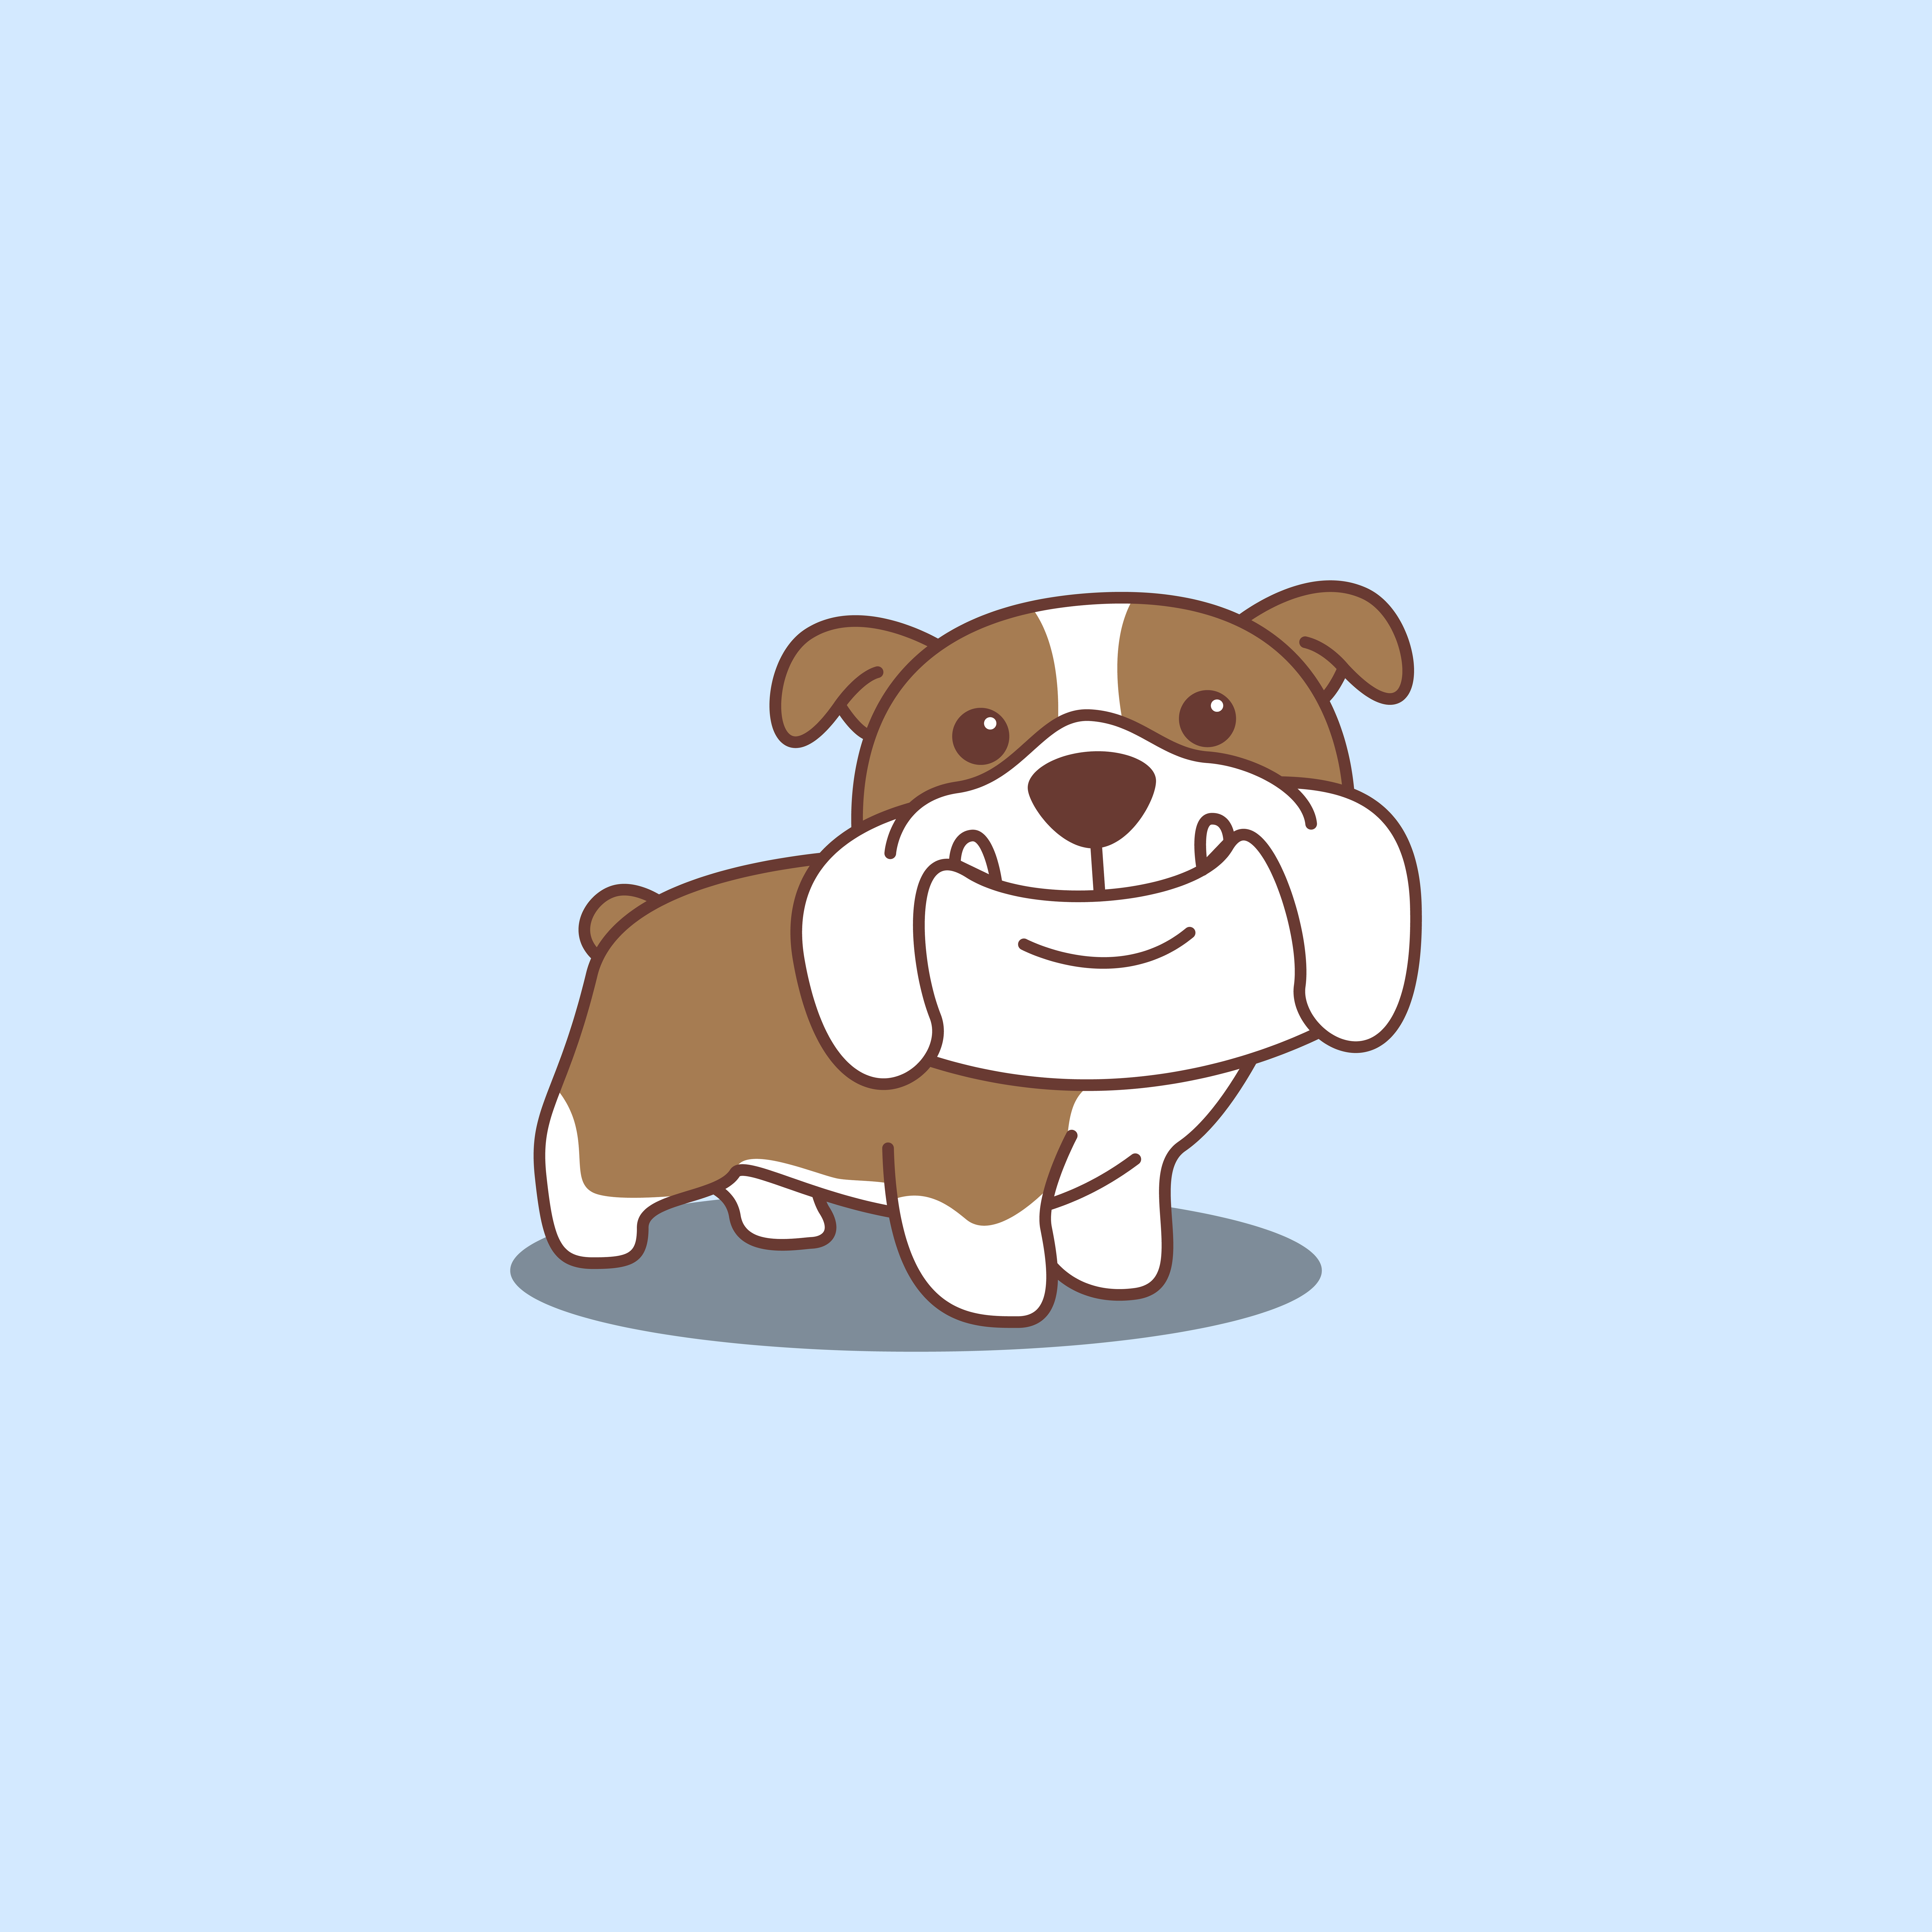 Cute english bulldog cartoon icon 1339903 Vector Art at Vecteezy